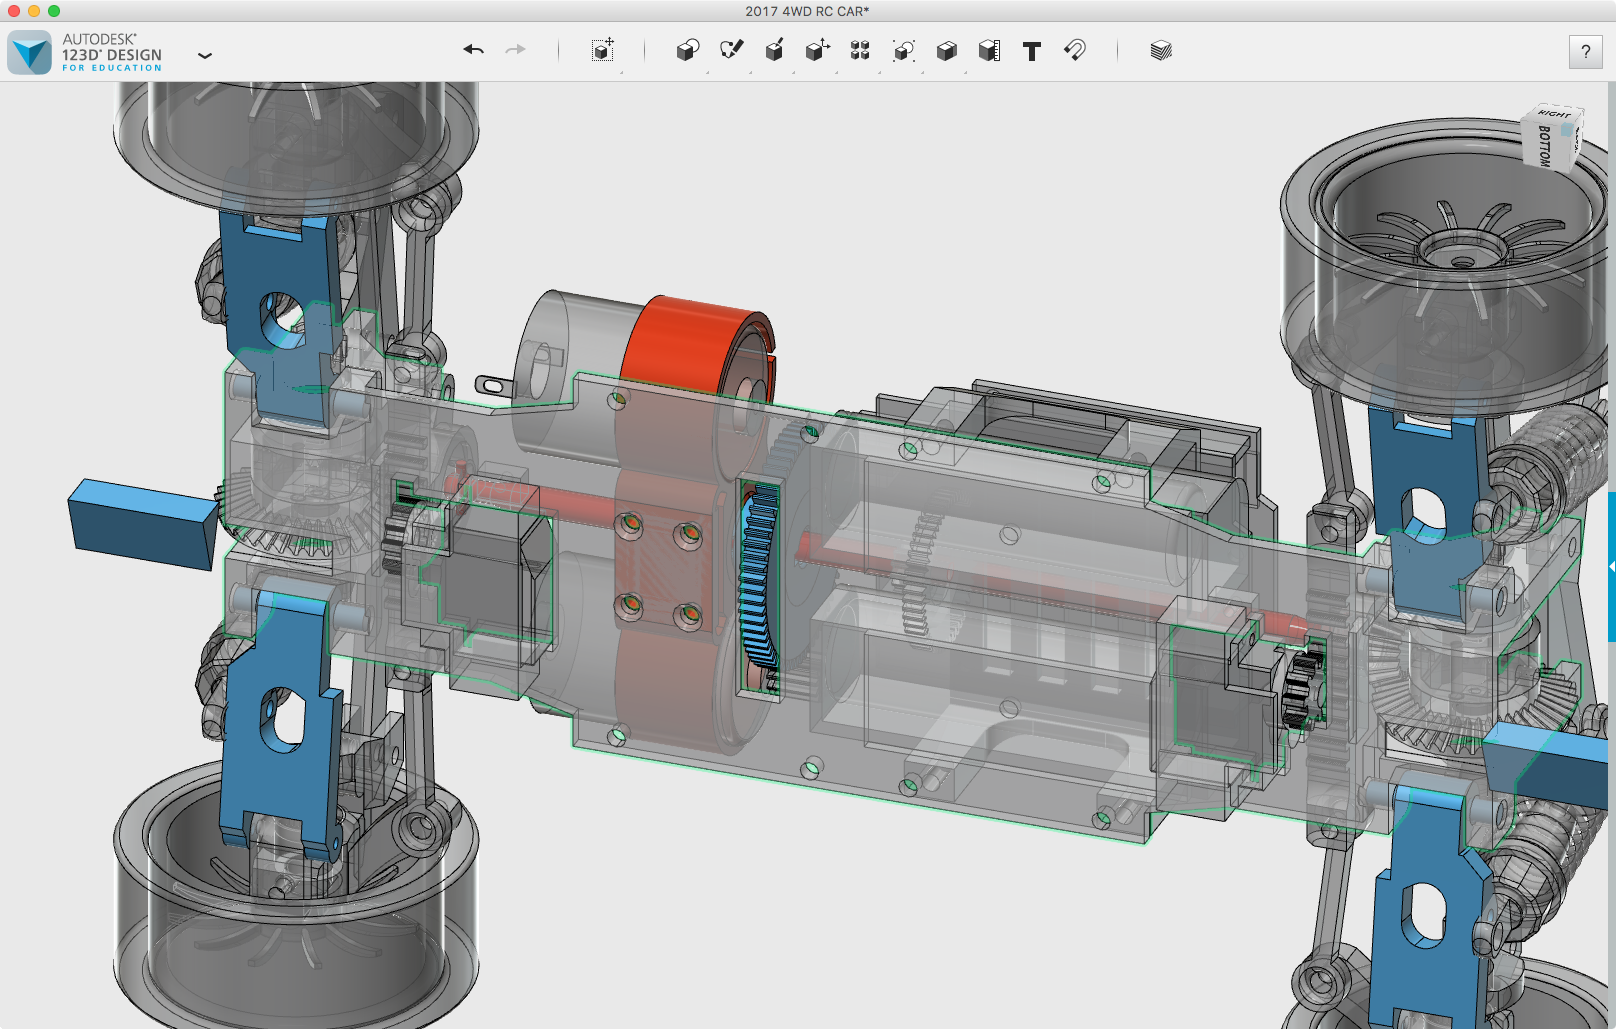 3D프린터와 아두이노로 만드는 4WS RC CAR #1 - 3DEMP